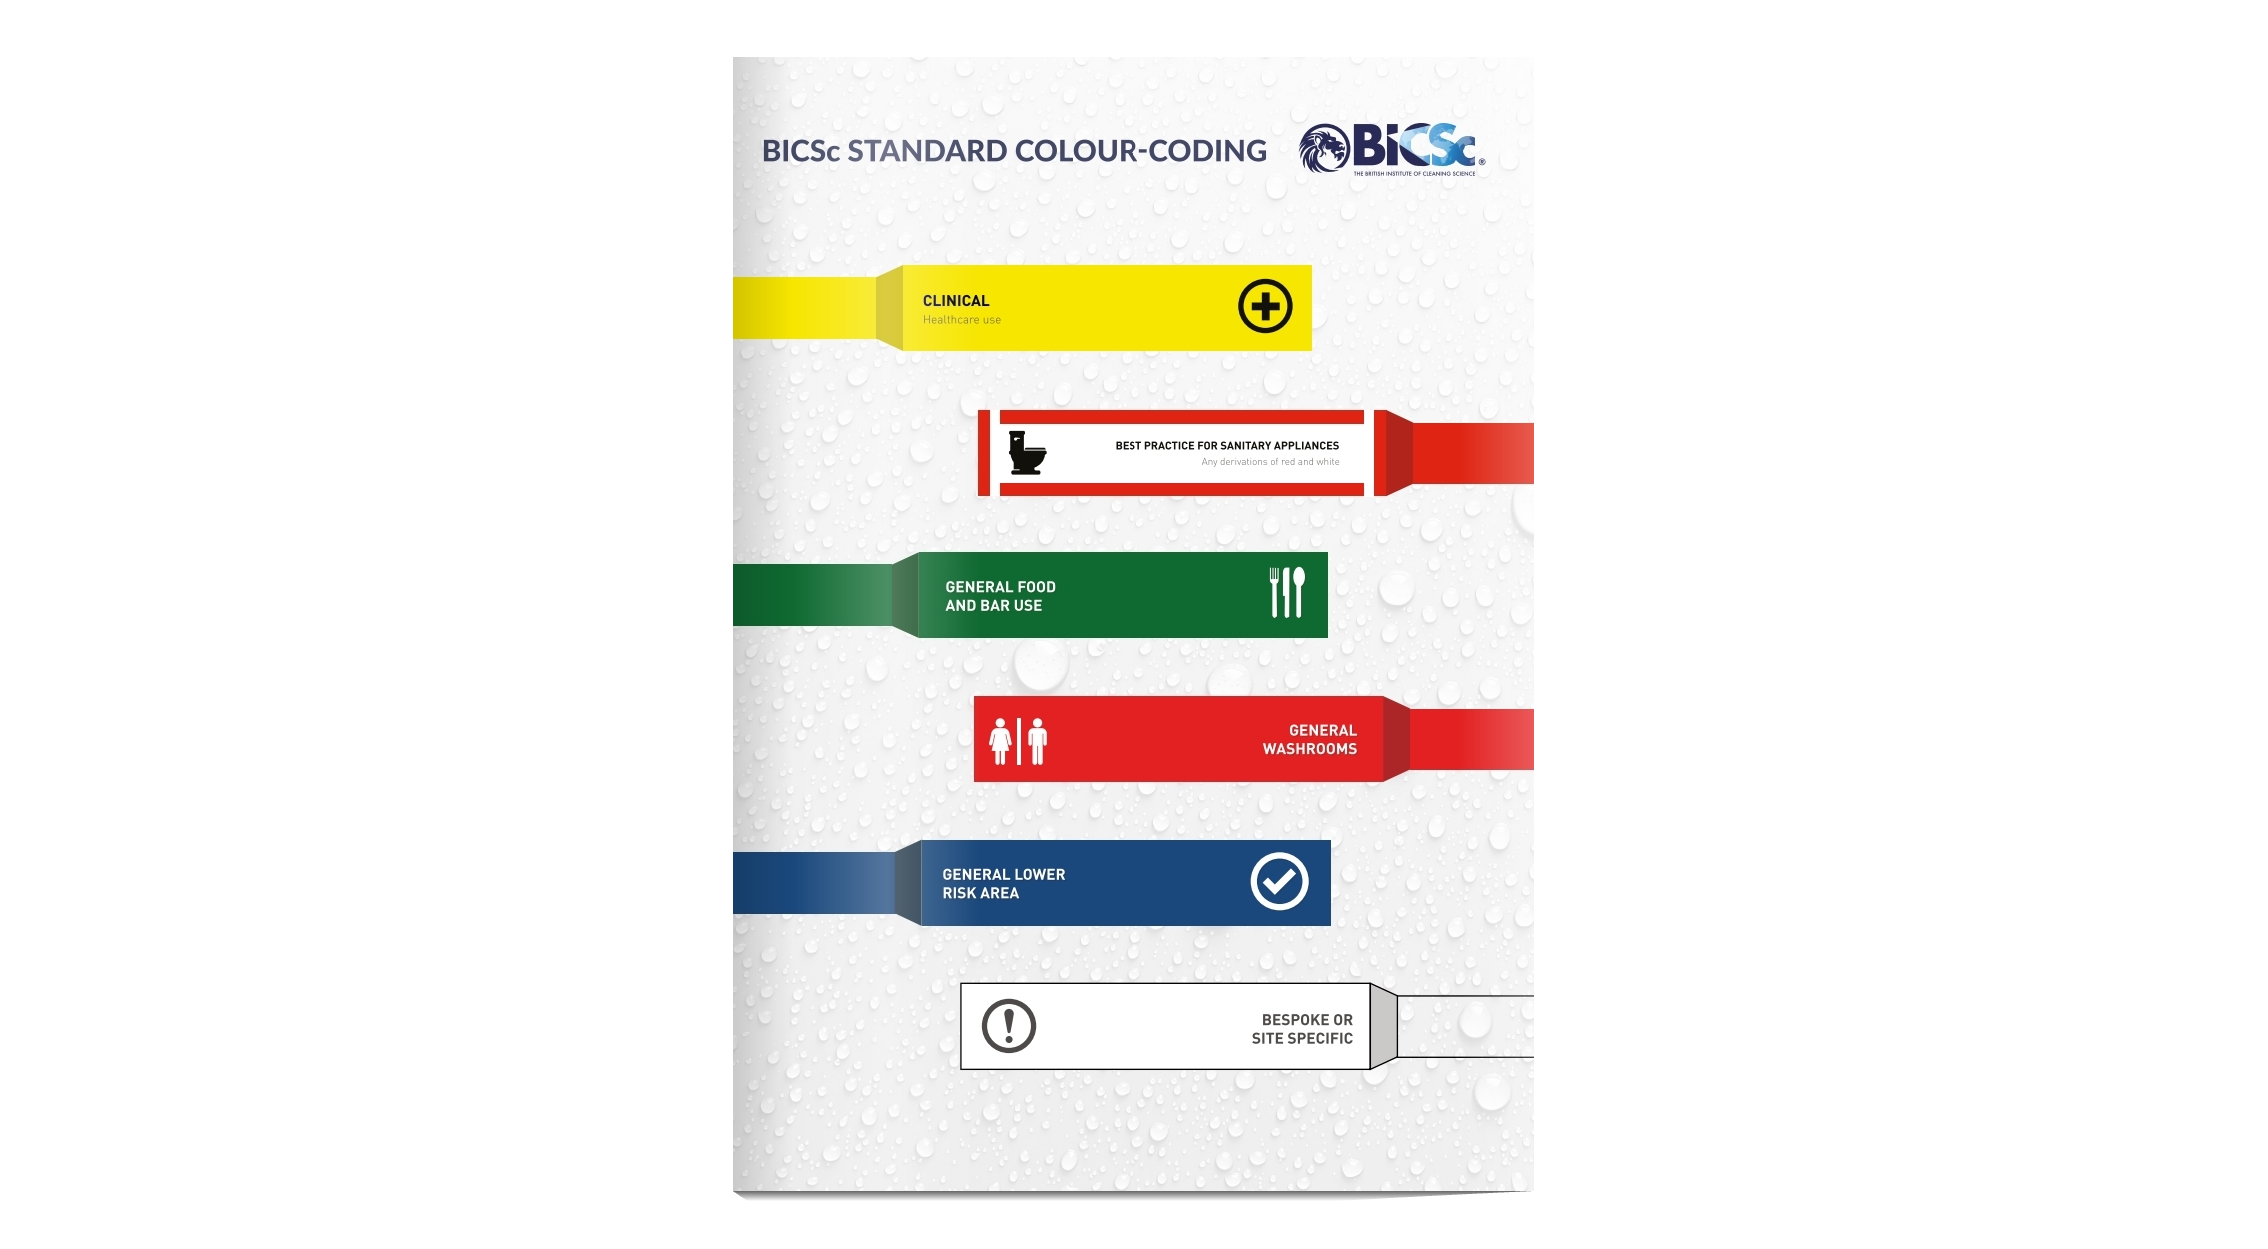 The BICSc colour chart